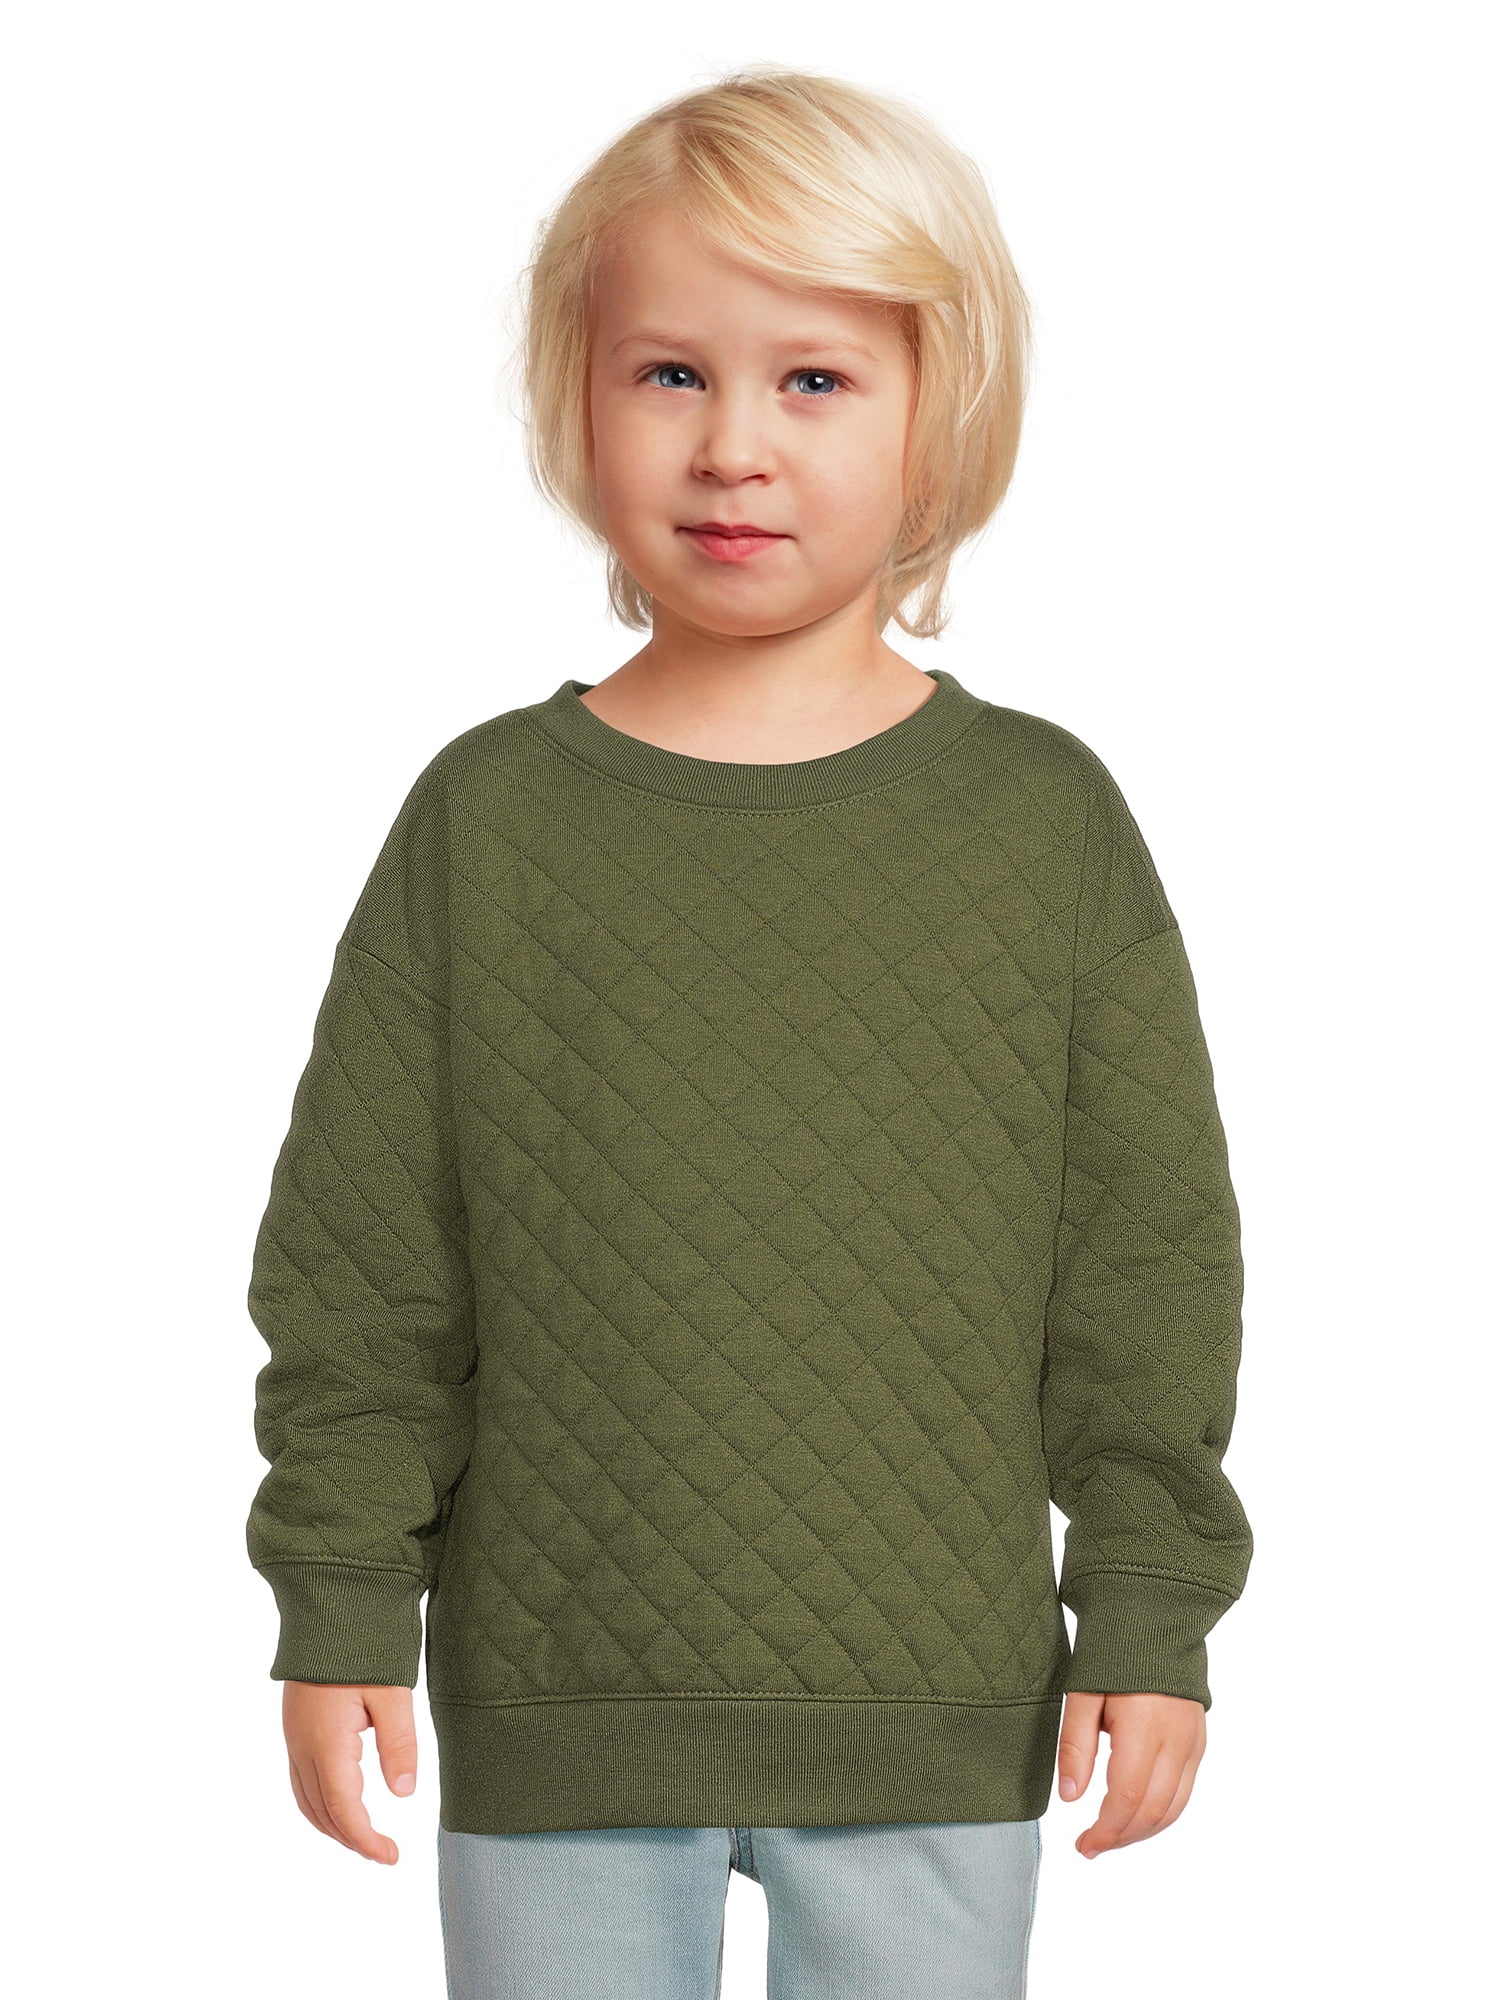 Garanimals Toddler Boy Quilted Pullover Top, Sizes 12 M-5T - Walmart.com